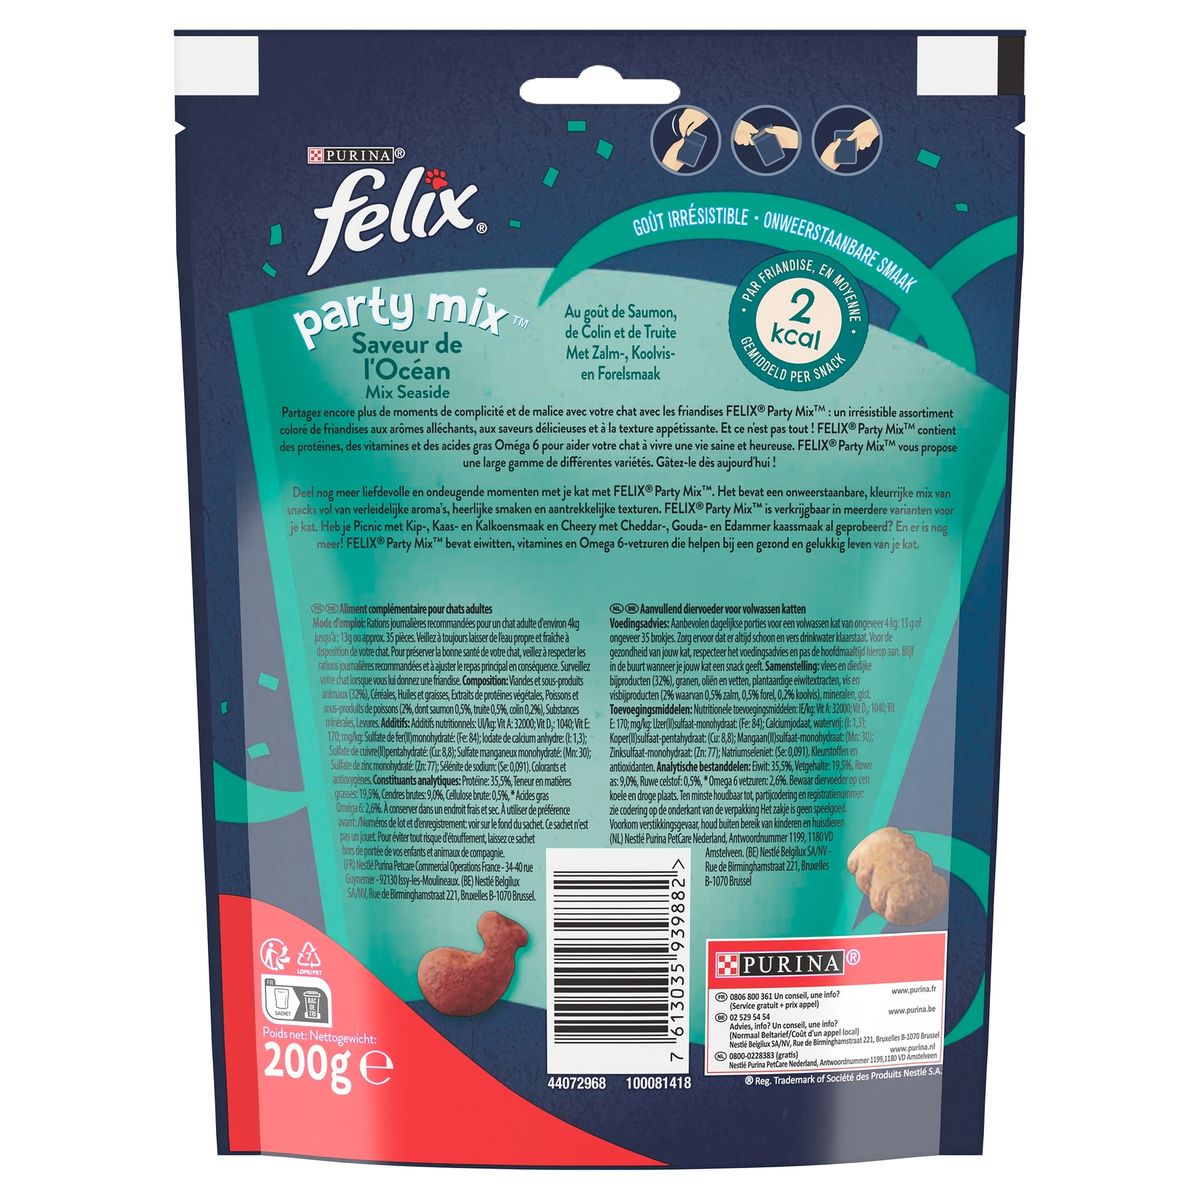 Felix Party Mix Snacks Mix Seaside Maxi Pack 200 g